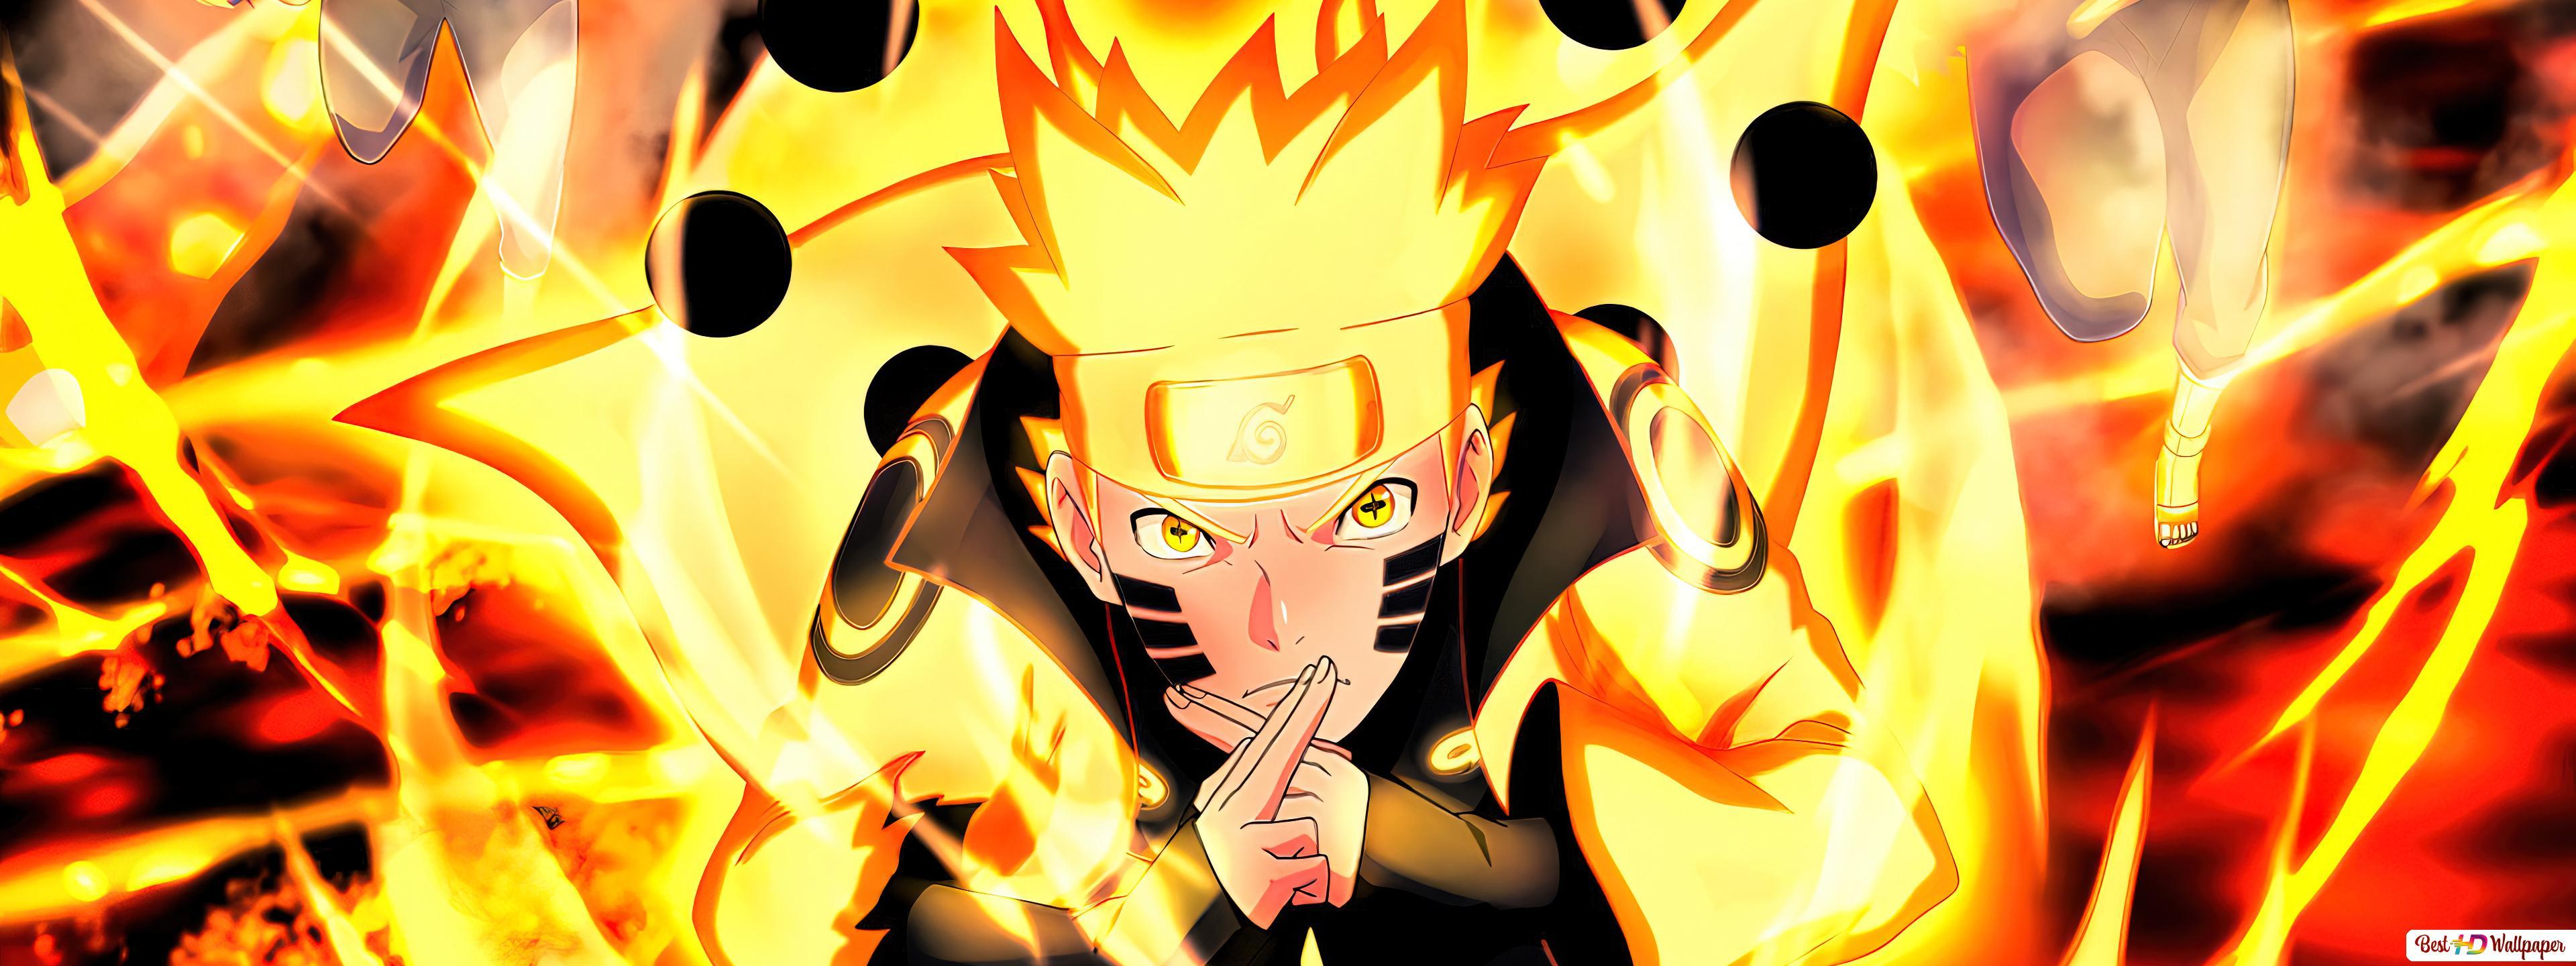 Naruto Modo Kurama Wallpapers - Top Free Naruto Modo Kurama Backgrounds ...